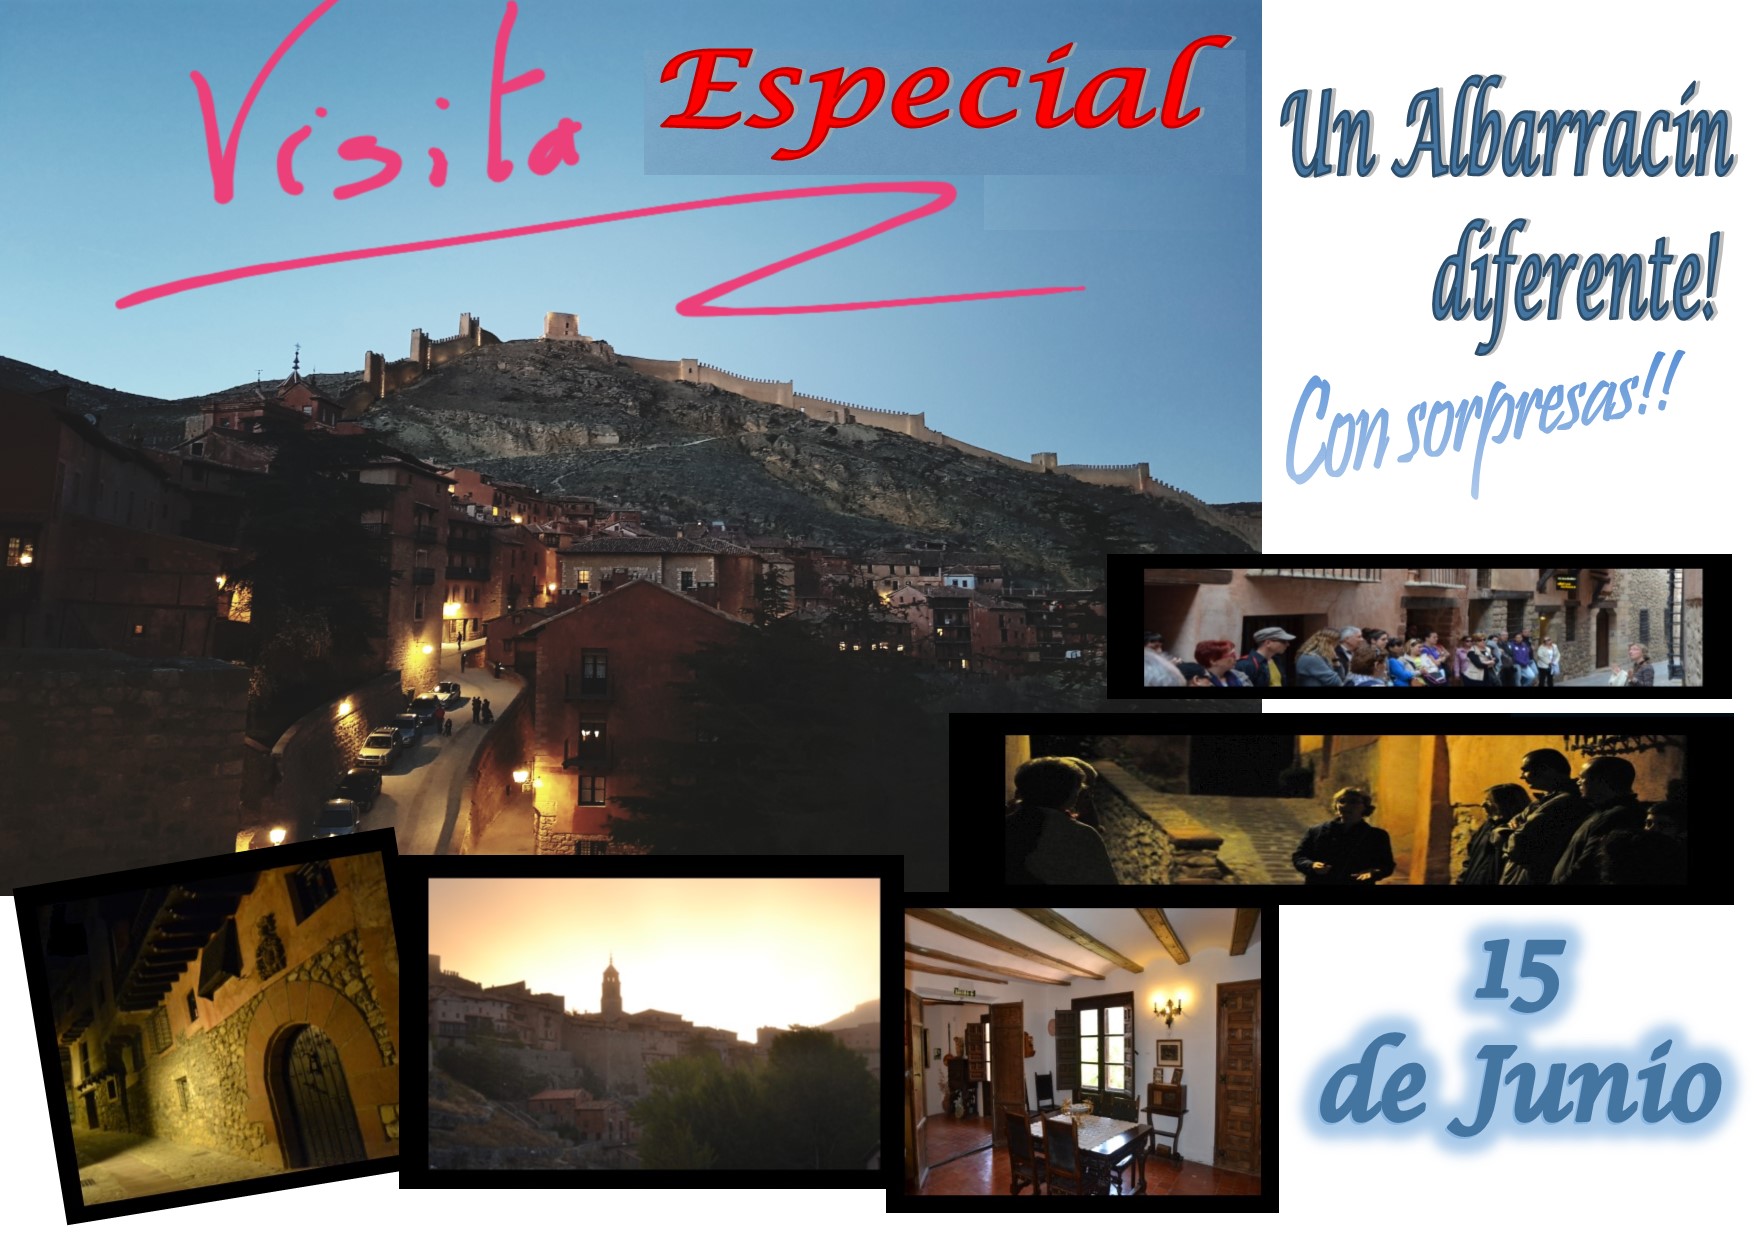 El Sábado 15 de Junio…Albarracín Especial!